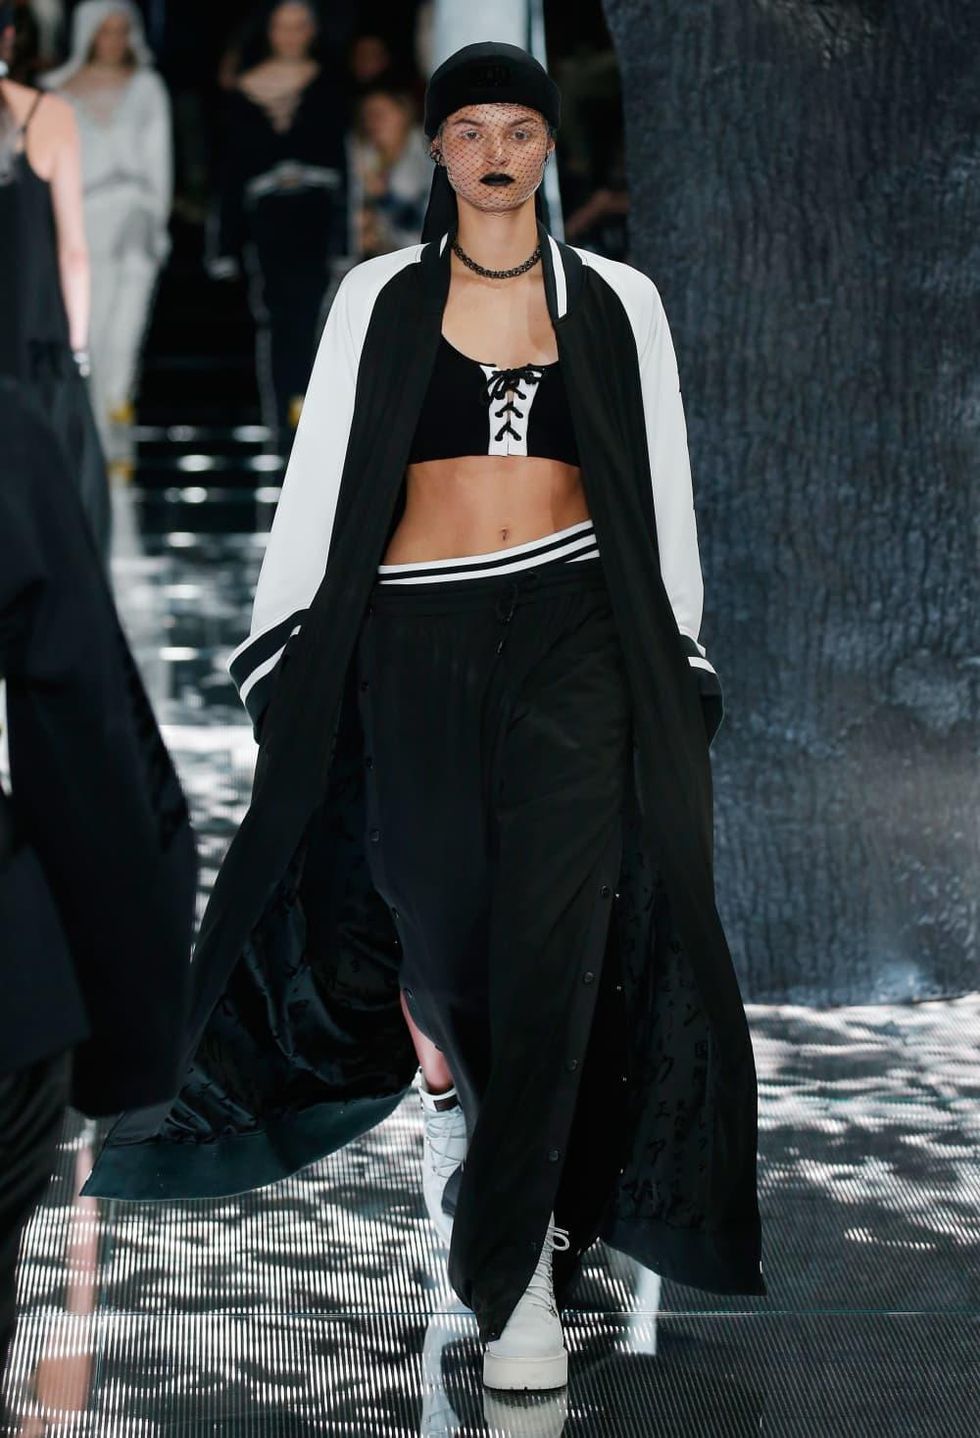 Rihanna Fenty x Puma show at New York Fashion Week